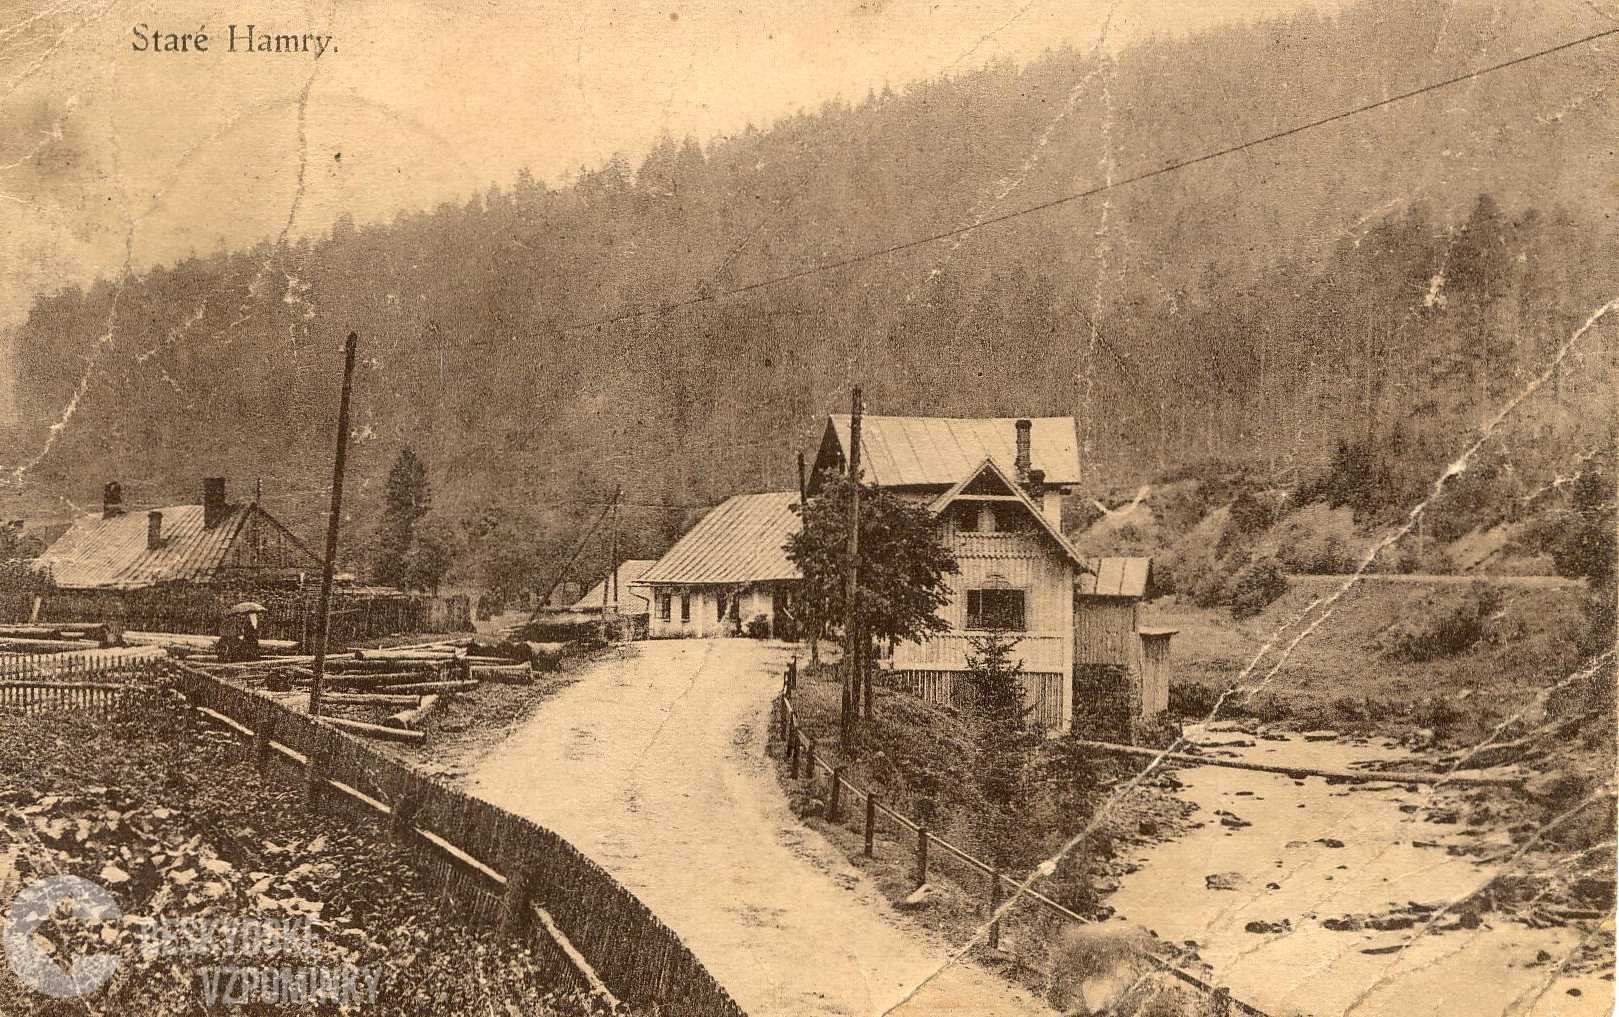 Staré Hamry 1930